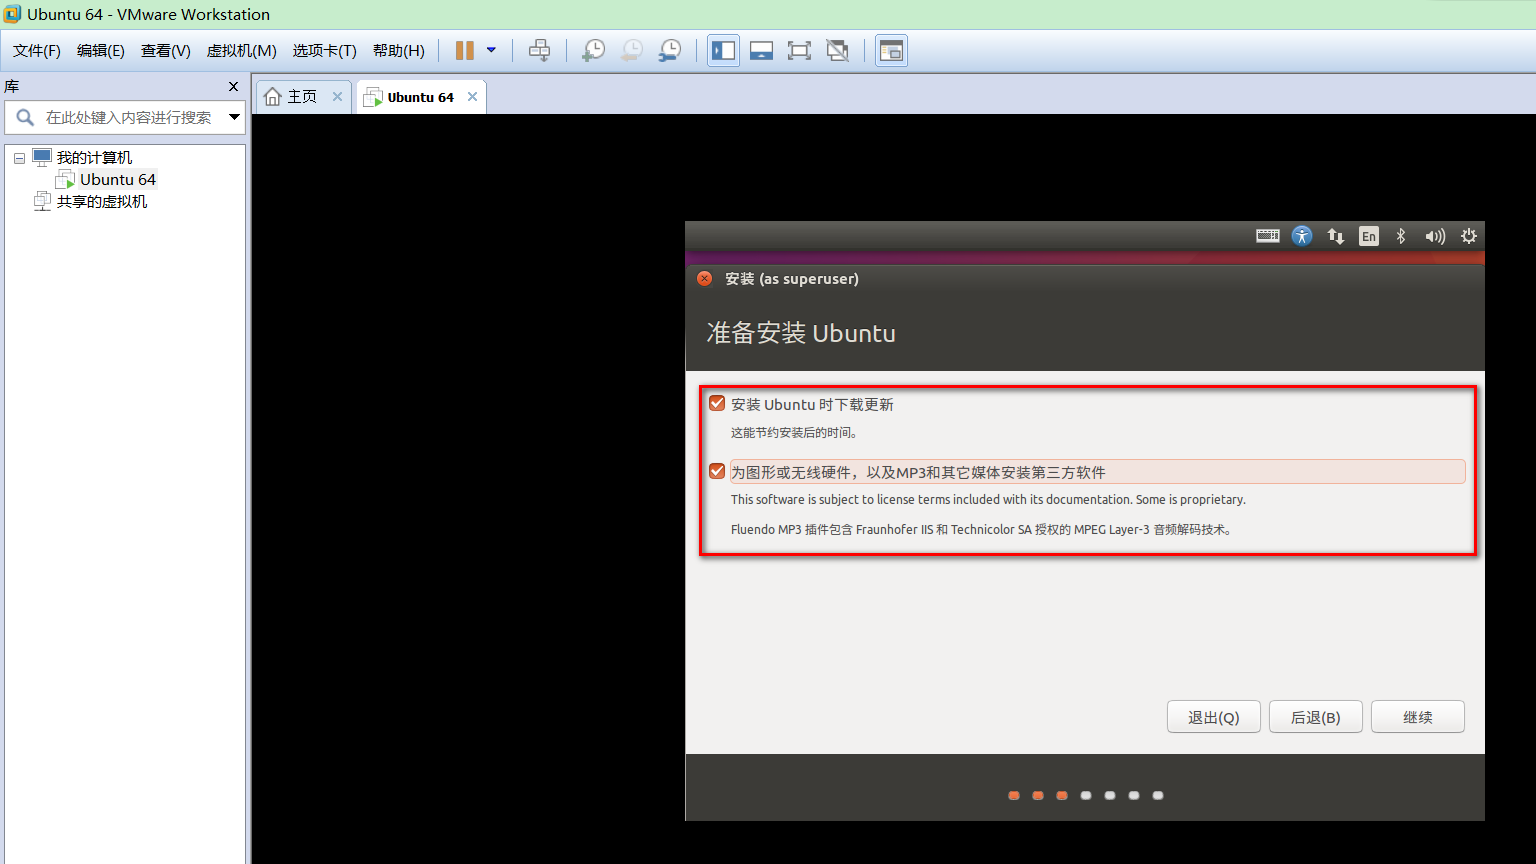 VMware14.0.0版本虚拟机如何安装Ubuntu16.04 LTS版本Linux系统